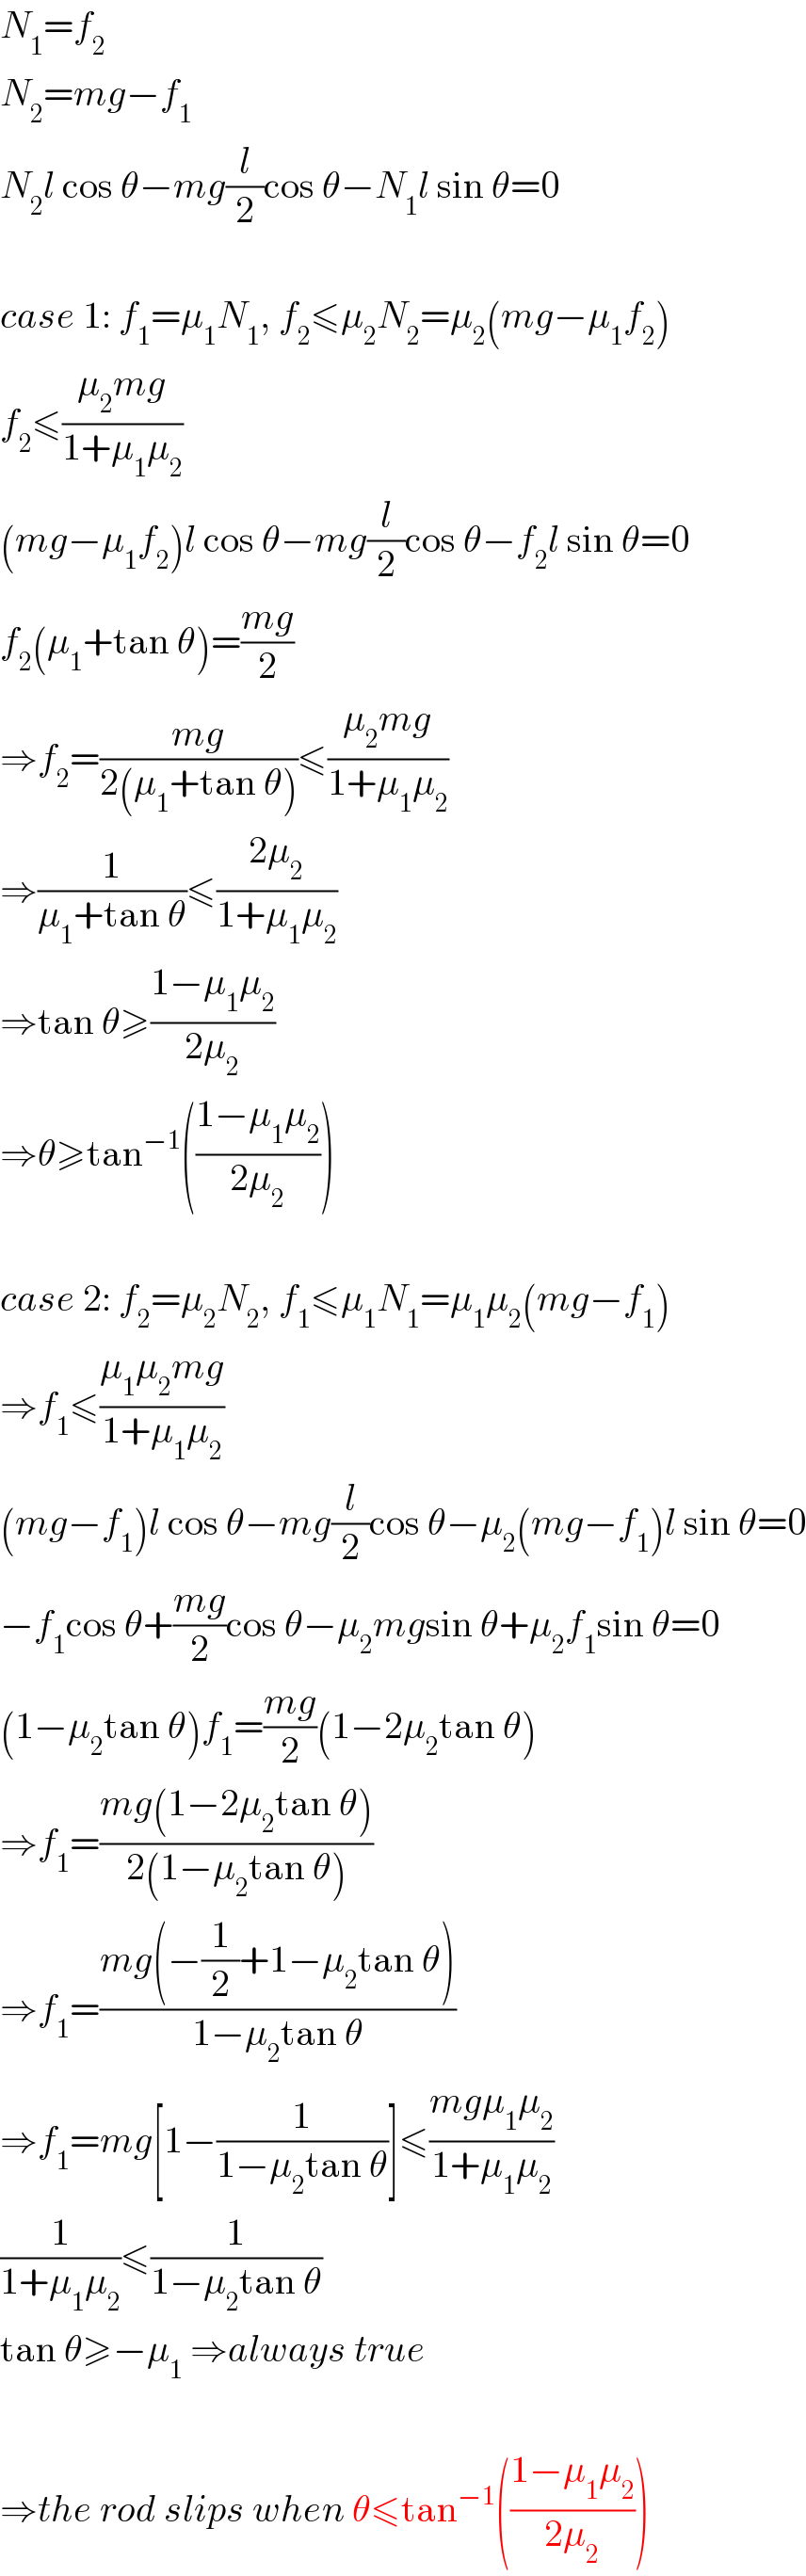 N_1 =f_2   N_2 =mg−f_1   N_2 l cos θ−mg(l/2)cos θ−N_1 l sin θ=0    case 1: f_1 =μ_1 N_1 , f_2 ≤μ_2 N_2 =μ_2 (mg−μ_1 f_2 )  f_2 ≤((μ_2 mg)/(1+μ_1 μ_2 ))  (mg−μ_1 f_2 )l cos θ−mg(l/2)cos θ−f_2 l sin θ=0  f_2 (μ_1 +tan θ)=((mg)/2)  ⇒f_2 =((mg)/(2(μ_1 +tan θ)))≤((μ_2 mg)/(1+μ_1 μ_2 ))  ⇒(1/(μ_1 +tan θ))≤((2μ_2 )/(1+μ_1 μ_2 ))  ⇒tan θ≥((1−μ_1 μ_2 )/(2μ_2 ))  ⇒θ≥tan^(−1) (((1−μ_1 μ_2 )/(2μ_2 )))    case 2: f_2 =μ_2 N_2 , f_1 ≤μ_1 N_1 =μ_1 μ_2 (mg−f_1 )  ⇒f_1 ≤((μ_1 μ_2 mg)/(1+μ_1 μ_2 ))  (mg−f_1 )l cos θ−mg(l/2)cos θ−μ_2 (mg−f_1 )l sin θ=0  −f_1 cos θ+((mg)/2)cos θ−μ_2 mgsin θ+μ_2 f_1 sin θ=0  (1−μ_2 tan θ)f_1 =((mg)/2)(1−2μ_2 tan θ)  ⇒f_1 =((mg(1−2μ_2 tan θ))/(2(1−μ_2 tan θ)))  ⇒f_1 =((mg(−(1/2)+1−μ_2 tan θ))/(1−μ_2 tan θ))  ⇒f_1 =mg[1−(1/(1−μ_2 tan θ))]≤((mgμ_1 μ_2 )/(1+μ_1 μ_2 ))  (1/(1+μ_1 μ_2 ))≤(1/(1−μ_2 tan θ))  tan θ≥−μ_1  ⇒always true    ⇒the rod slips when θ≤tan^(−1) (((1−μ_1 μ_2 )/(2μ_2 )))  